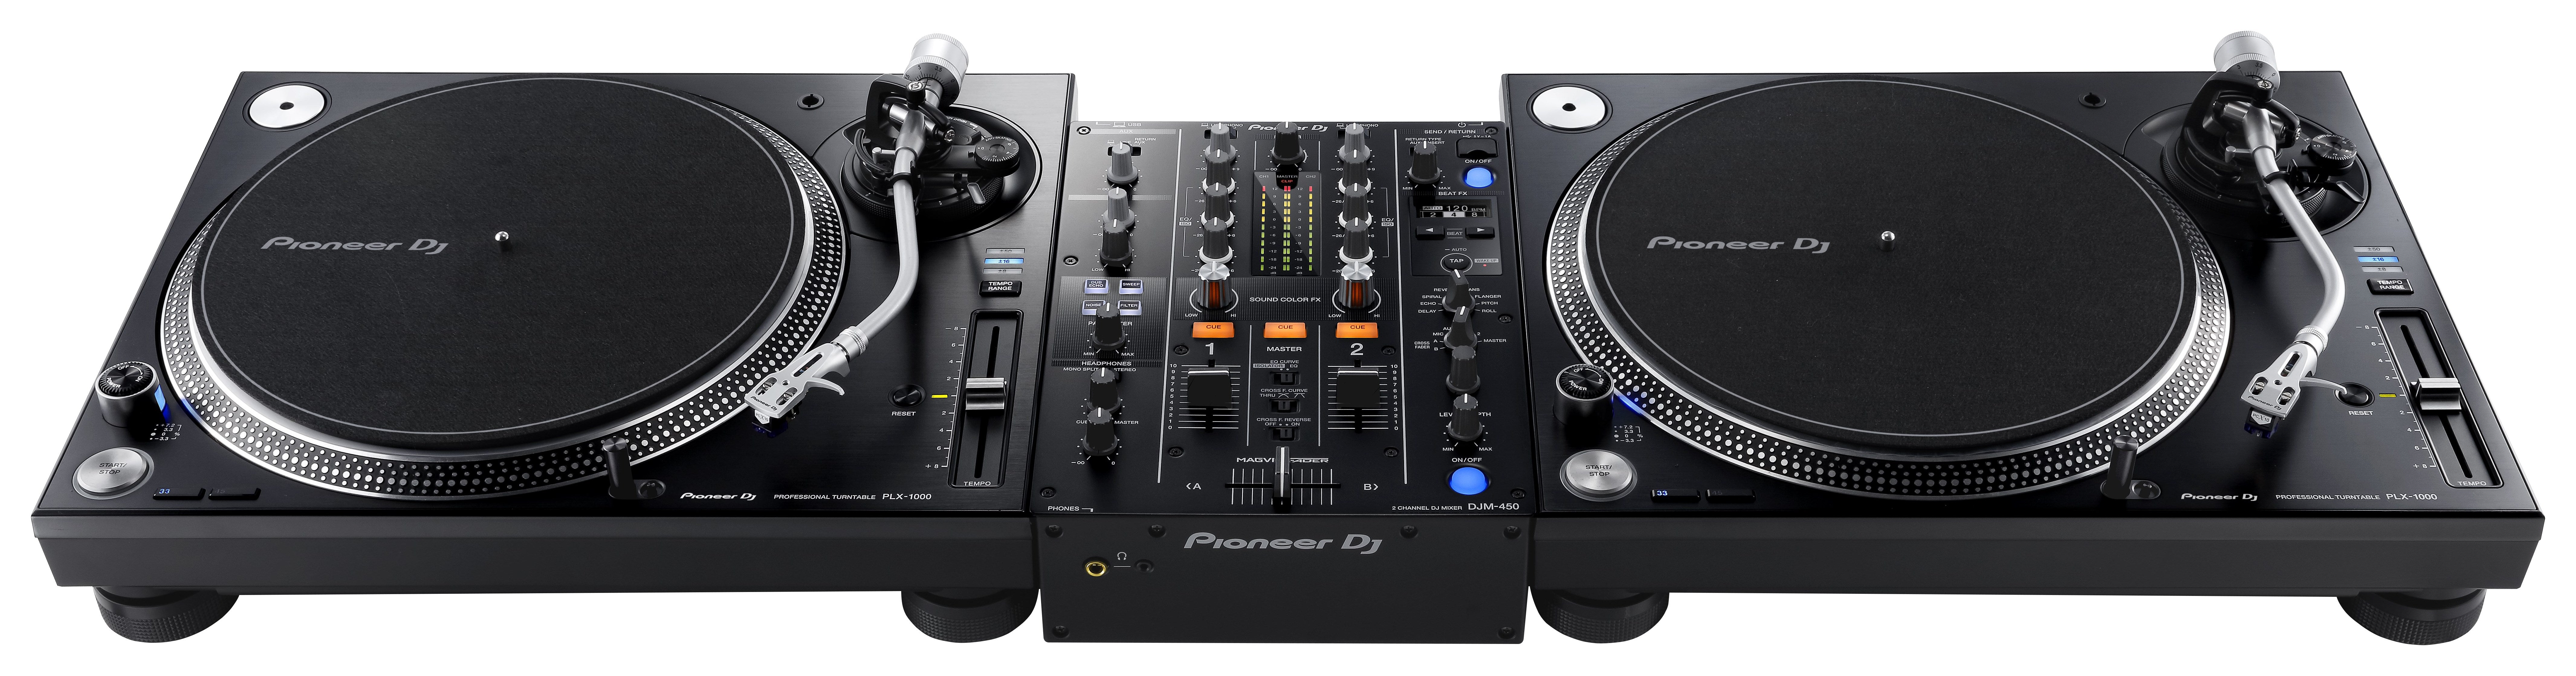 コントロー Pioneer パイオニア / DJM-450 + PLX-1000 (DVSセット) DJ